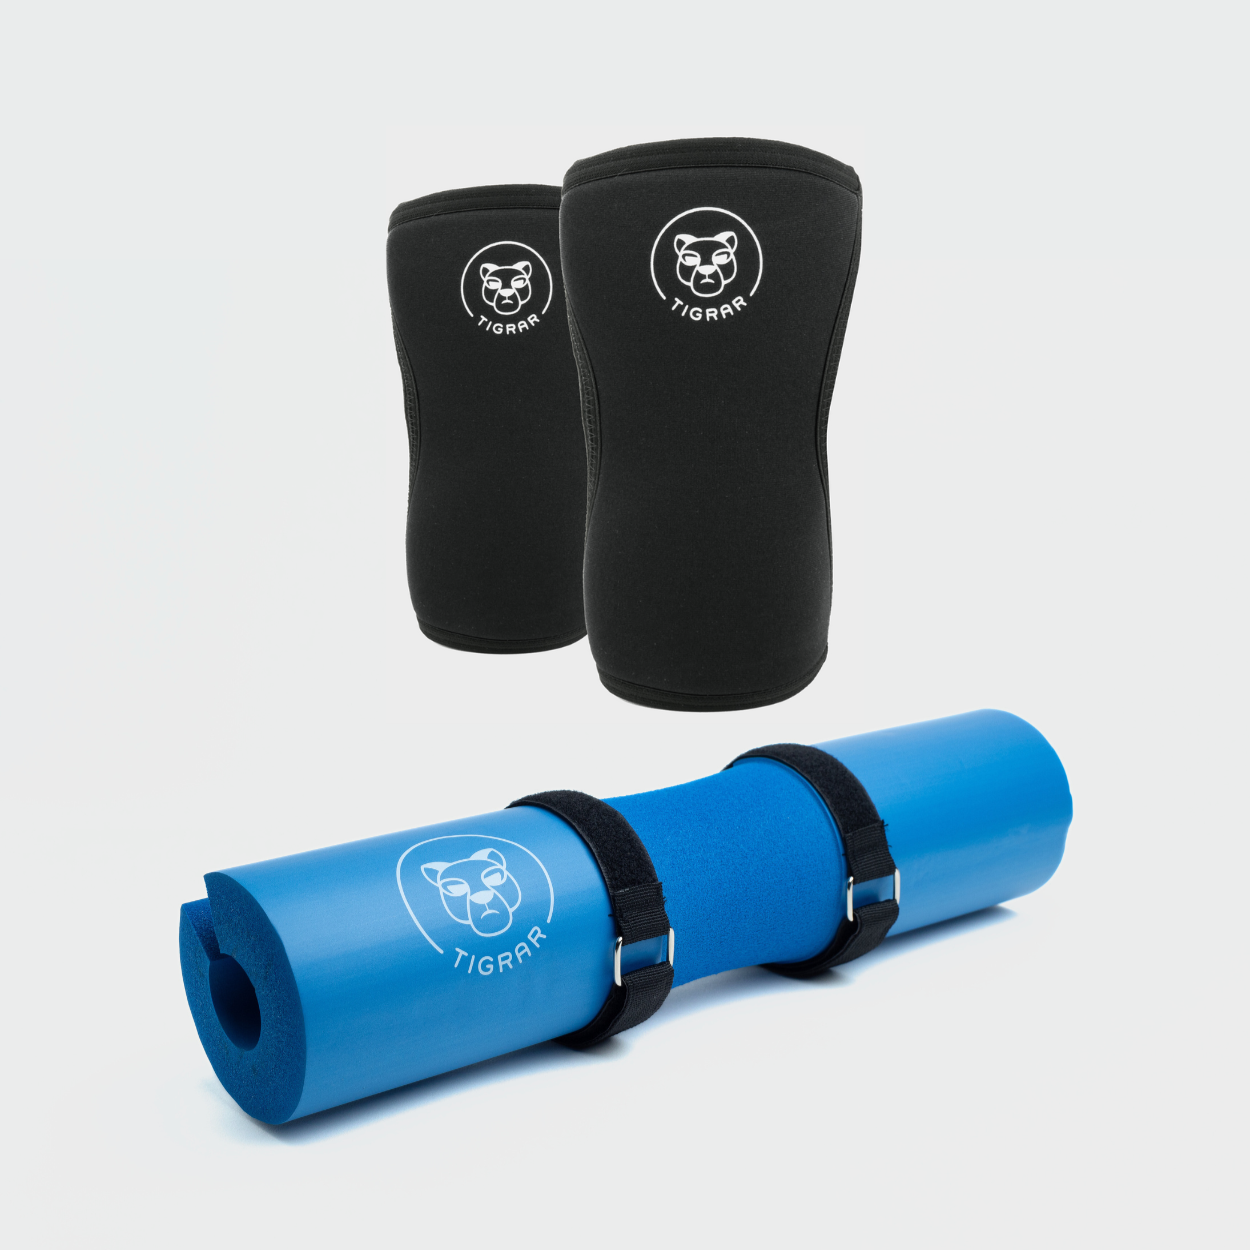 Tigrar's zwarte knee sleeves 7mm gecombineerd met een blauwe barbell pad, ideaal voor een comfortabele uitvoering van hip thrusts en meer.